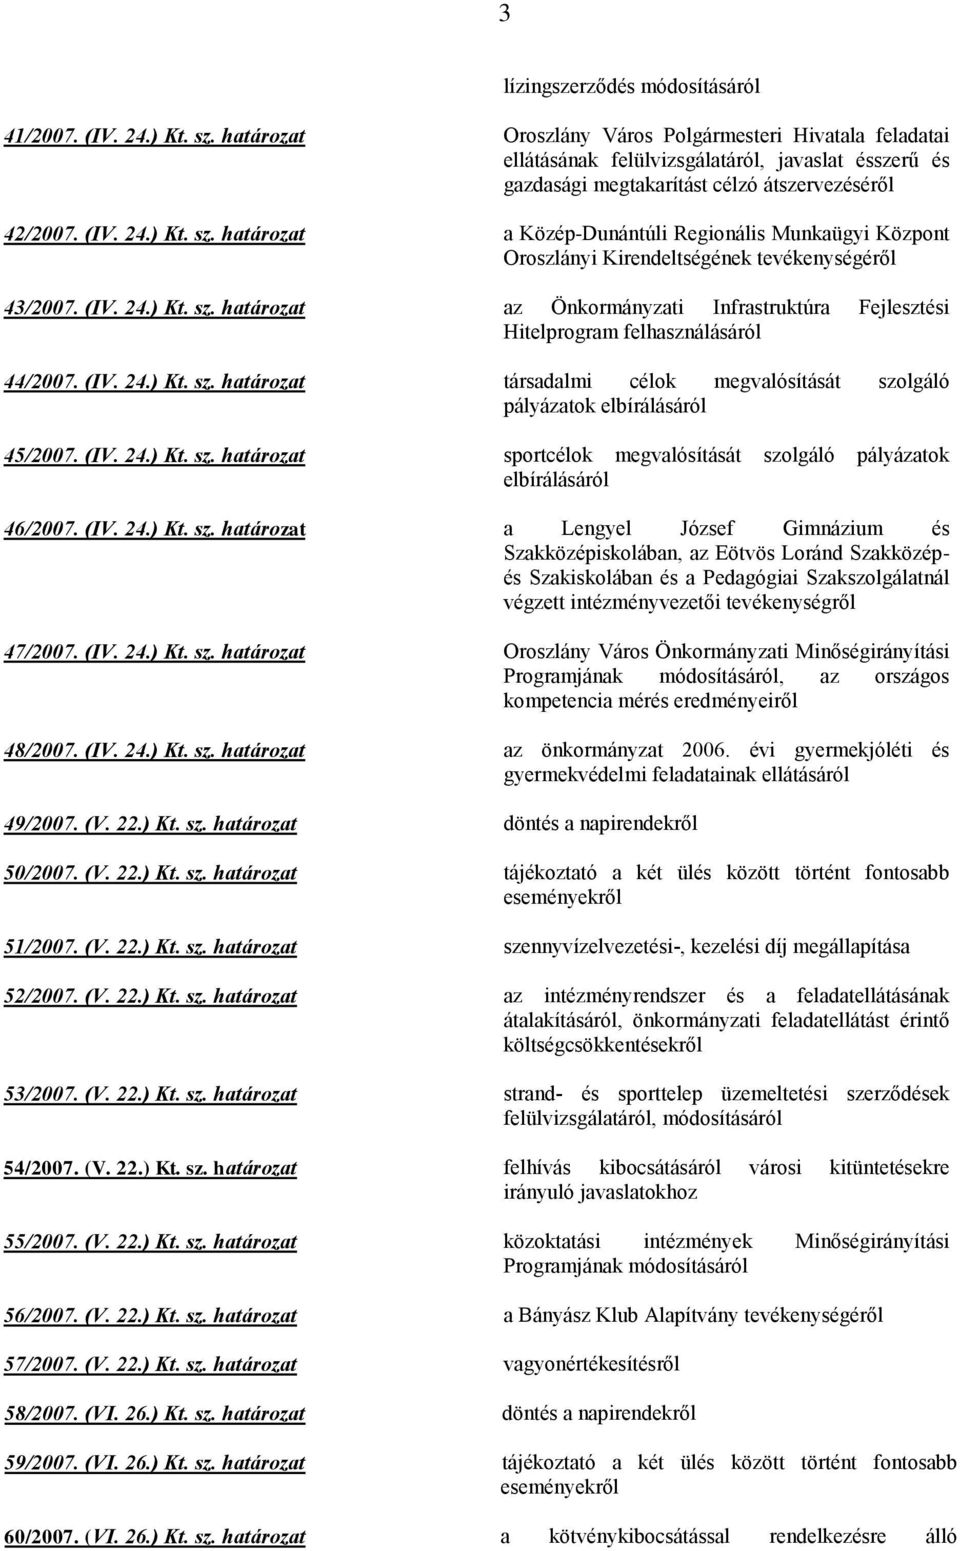 határozat a Közép-Dunántúli Regionális Munkaügyi Központ Oroszlányi Kirendeltségének tevékenységéről 43/2007. (IV. 24.) Kt. sz.